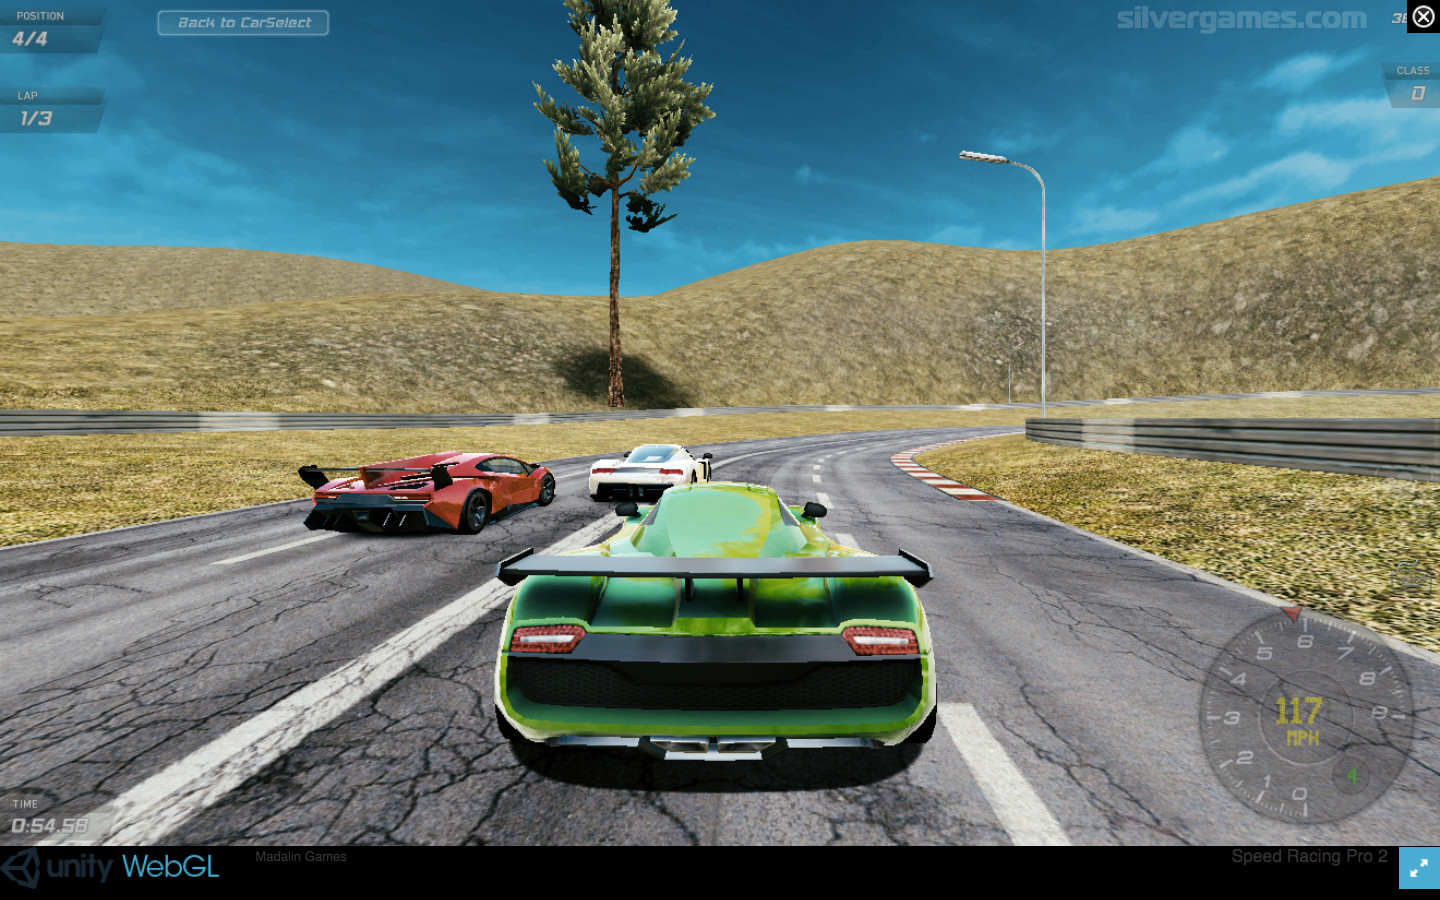 Speed Racing Pro 2 - Online Speed Racing Game